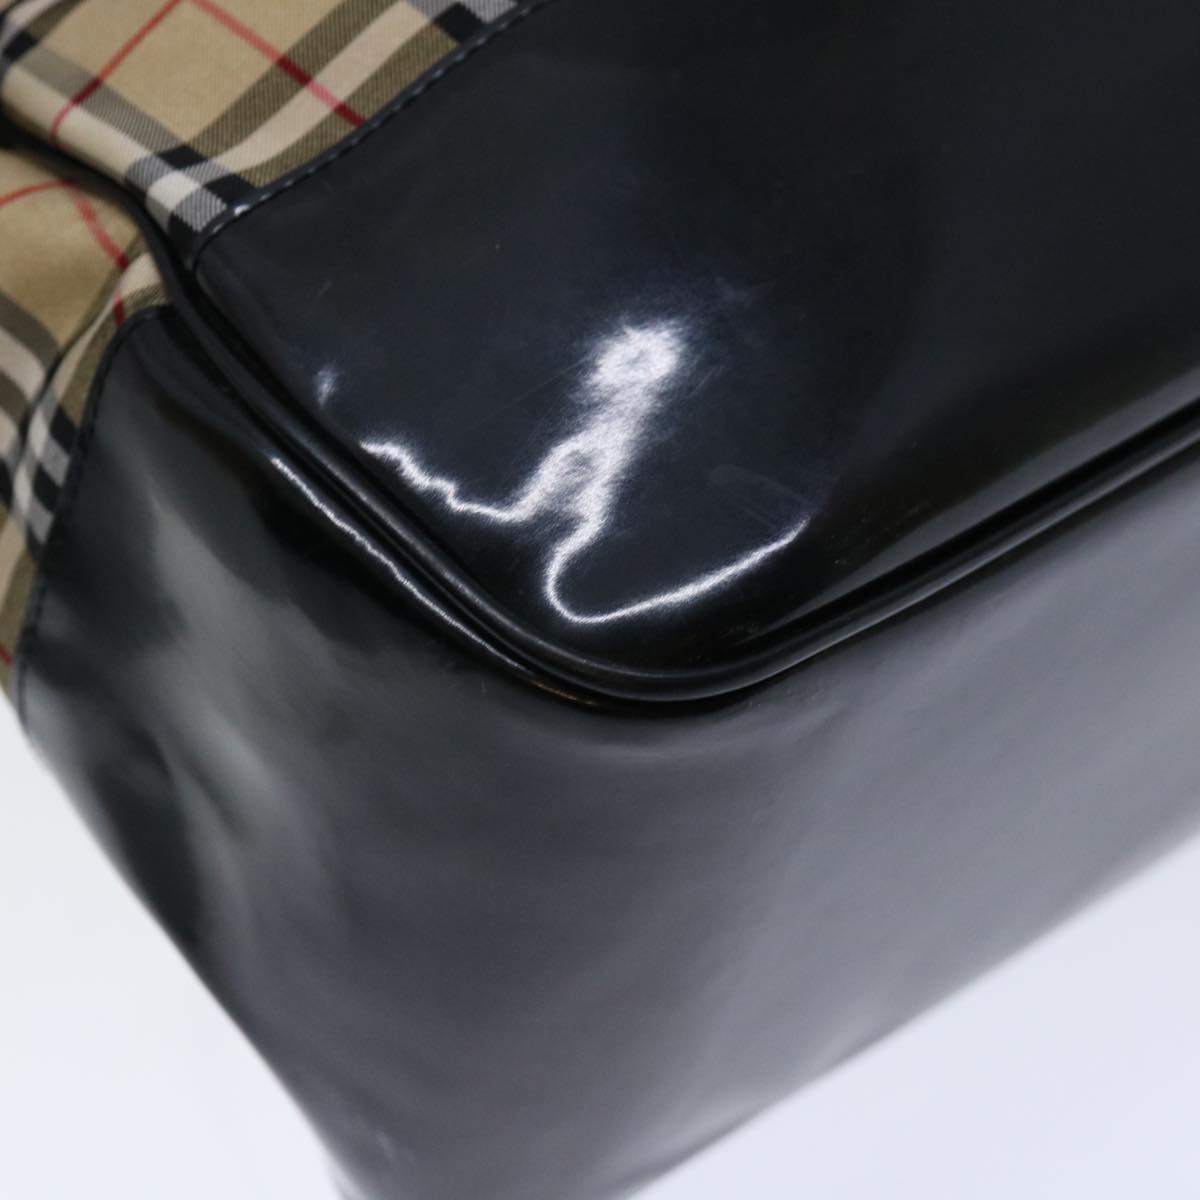 Burberrys Nova Check Blue Label Tote Bag Canvas Beige Black Auth 71014